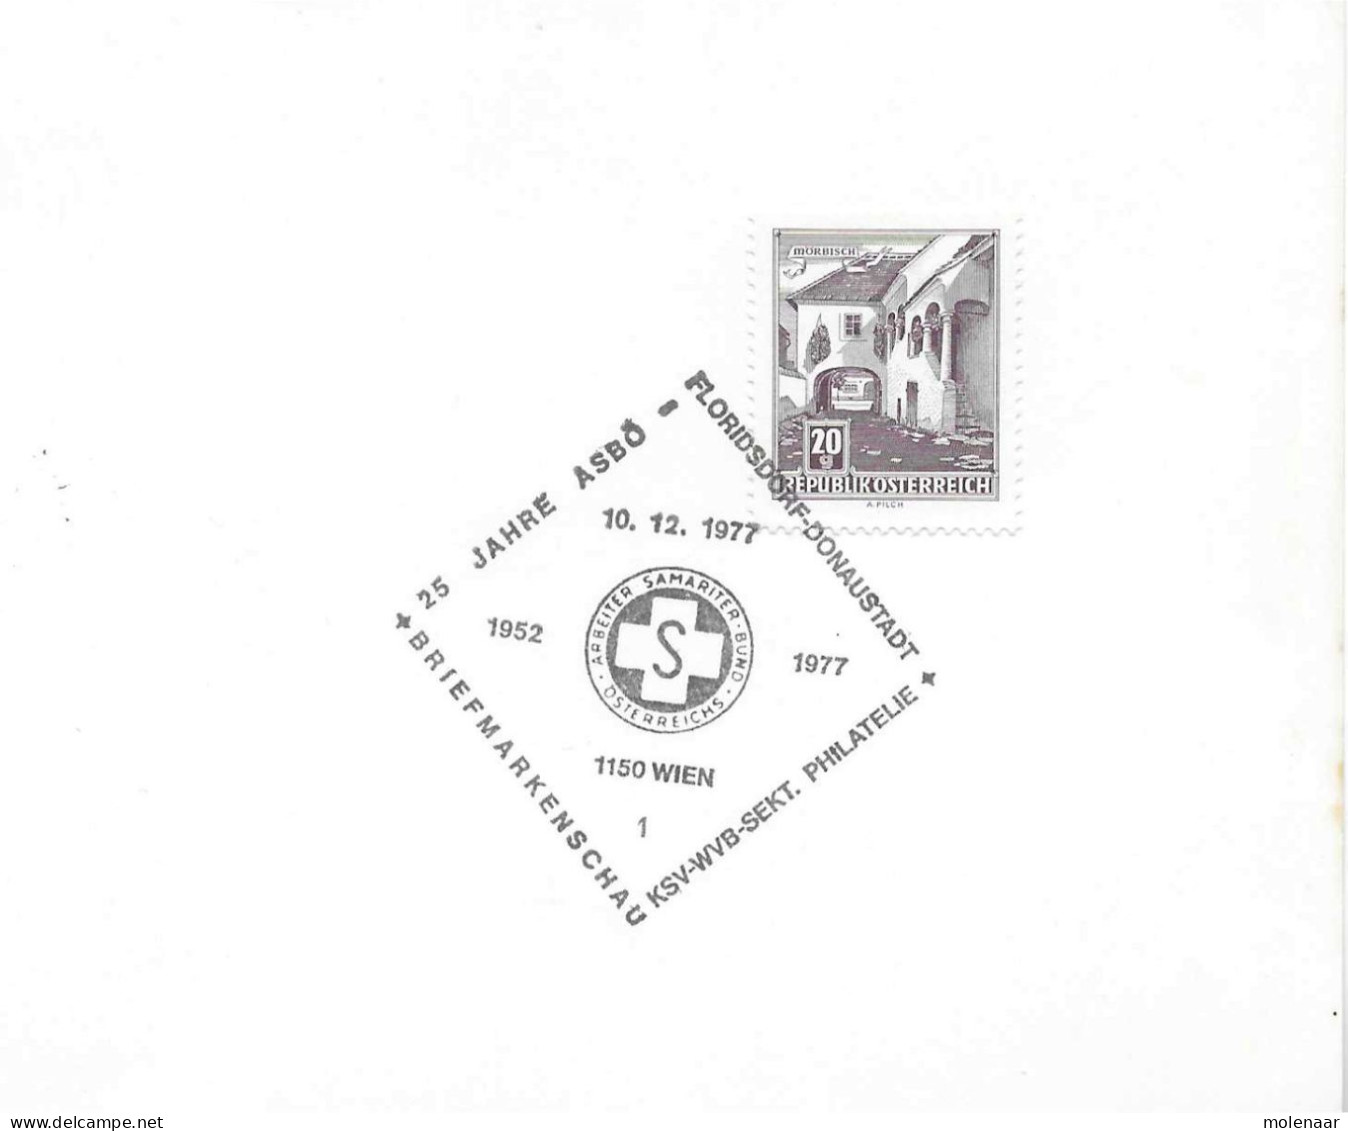 Postzegels > Europa > Oostenrijk >  Republiek > 1971-1900 > Kaart Uit 1977  Met 1 Postzegel (17767) - Briefe U. Dokumente